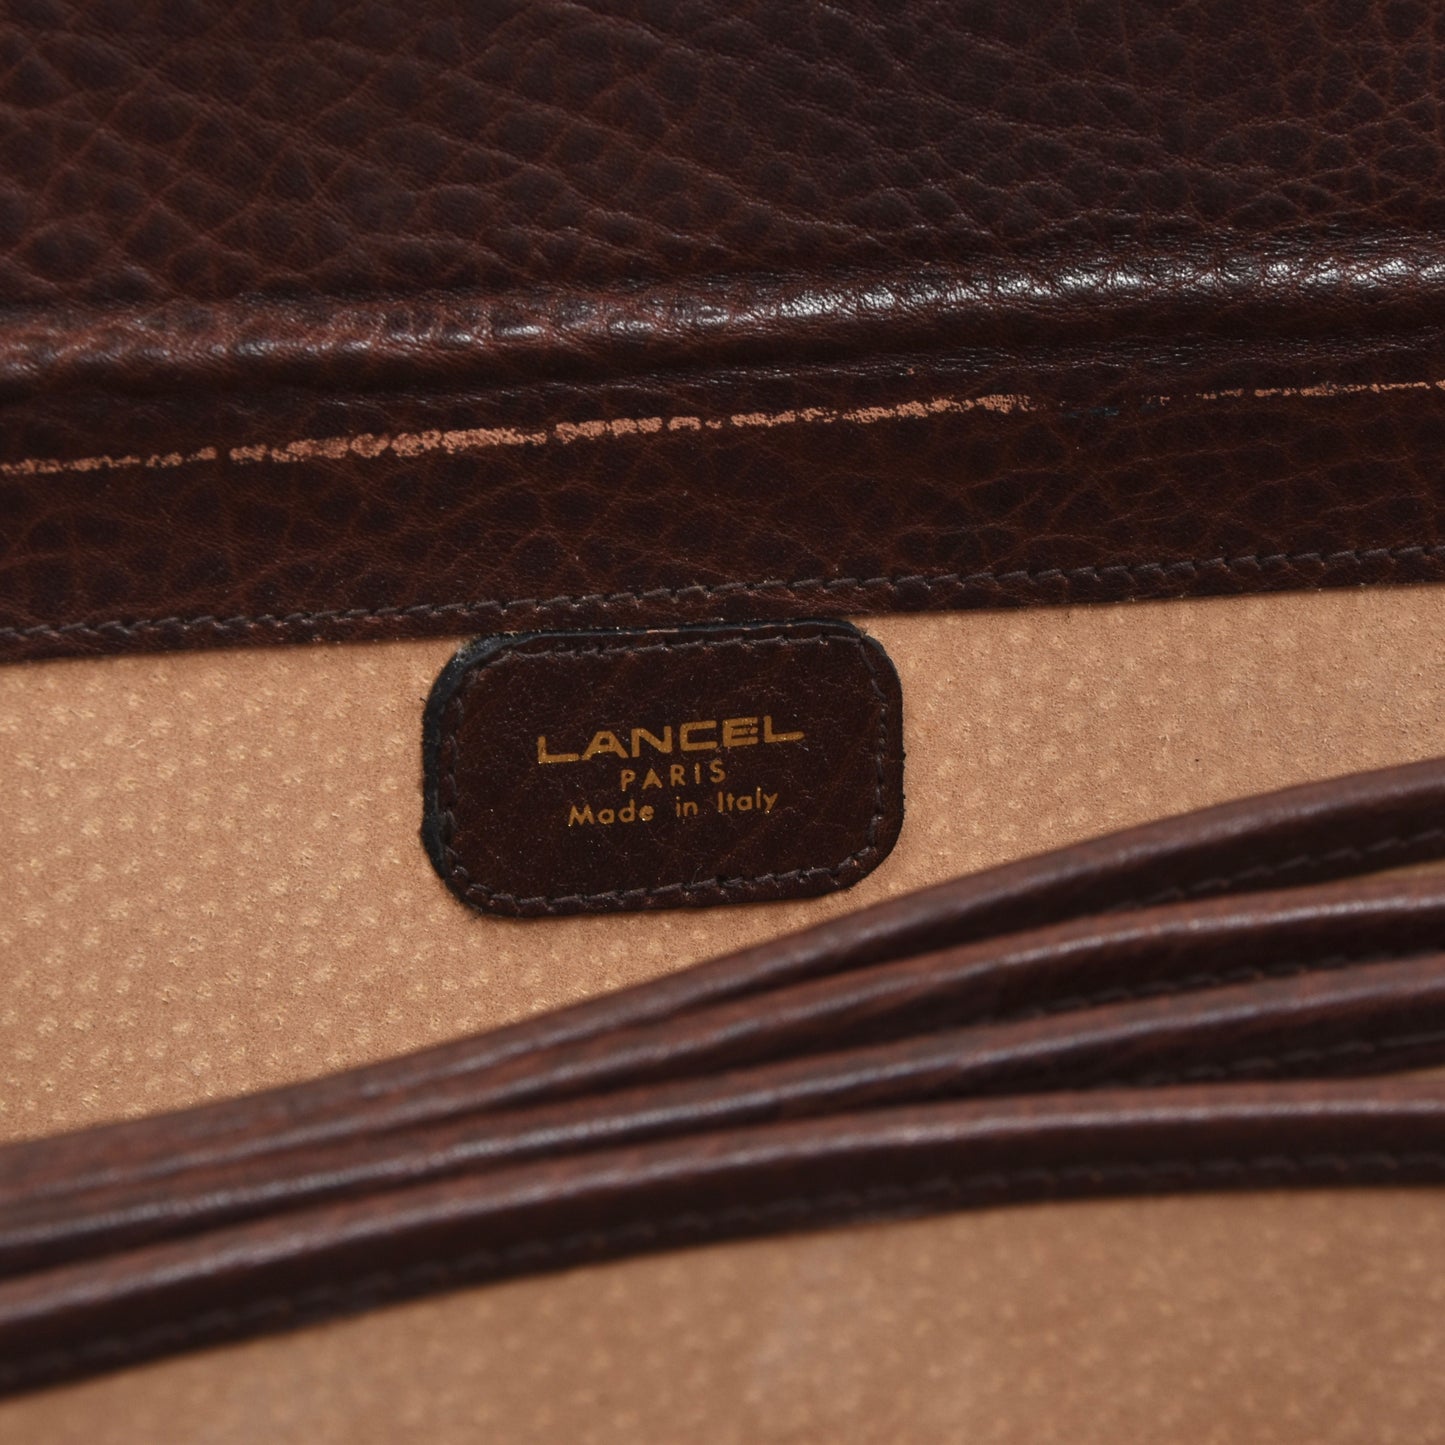 Lancel Paris Aktentasche aus Leder - Burgund-Braun